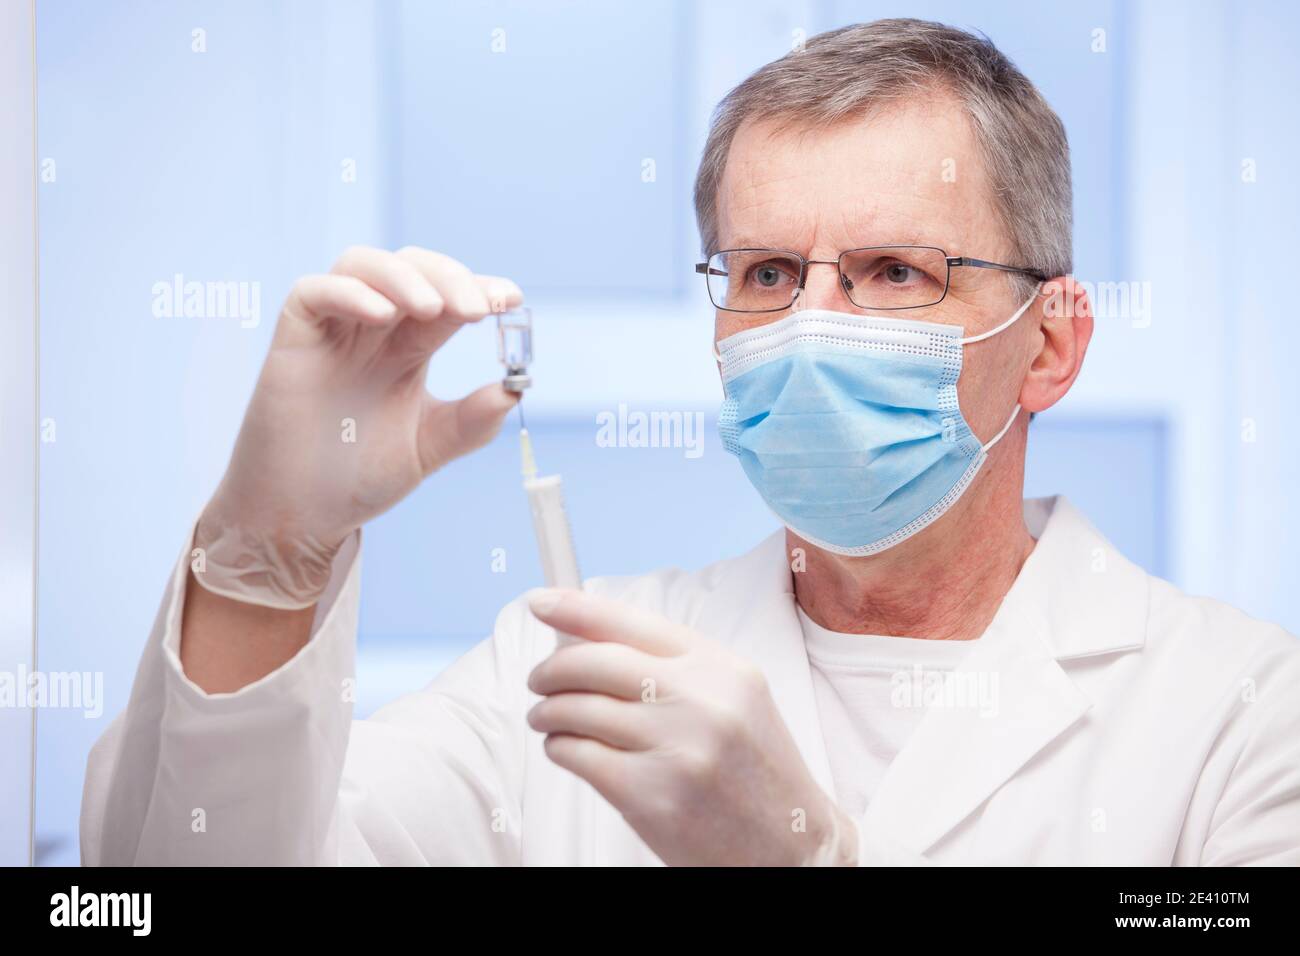 Médecin avec masque médical préparant une seringue pour la vaccination contre covid-19 - concentrez-vous sur le visage Banque D'Images